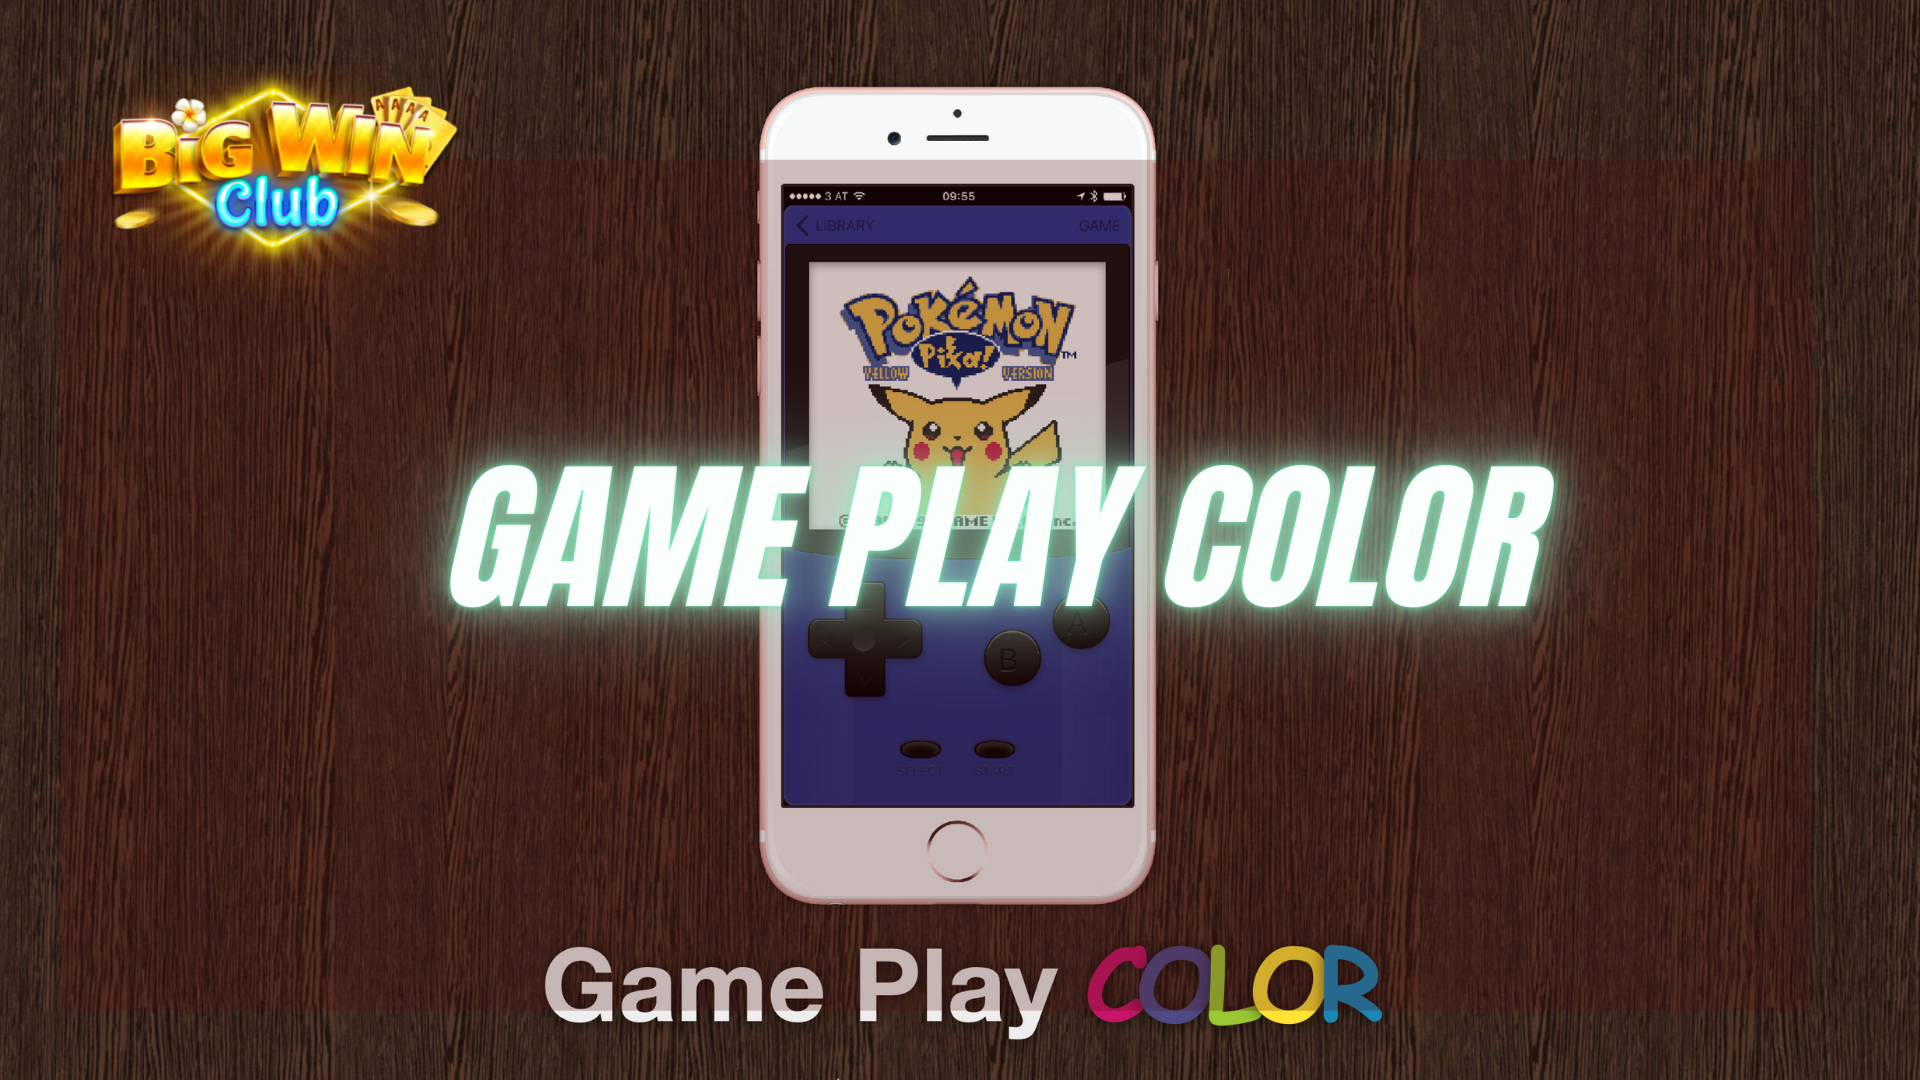 Ano nga ba ang Game Play Color?